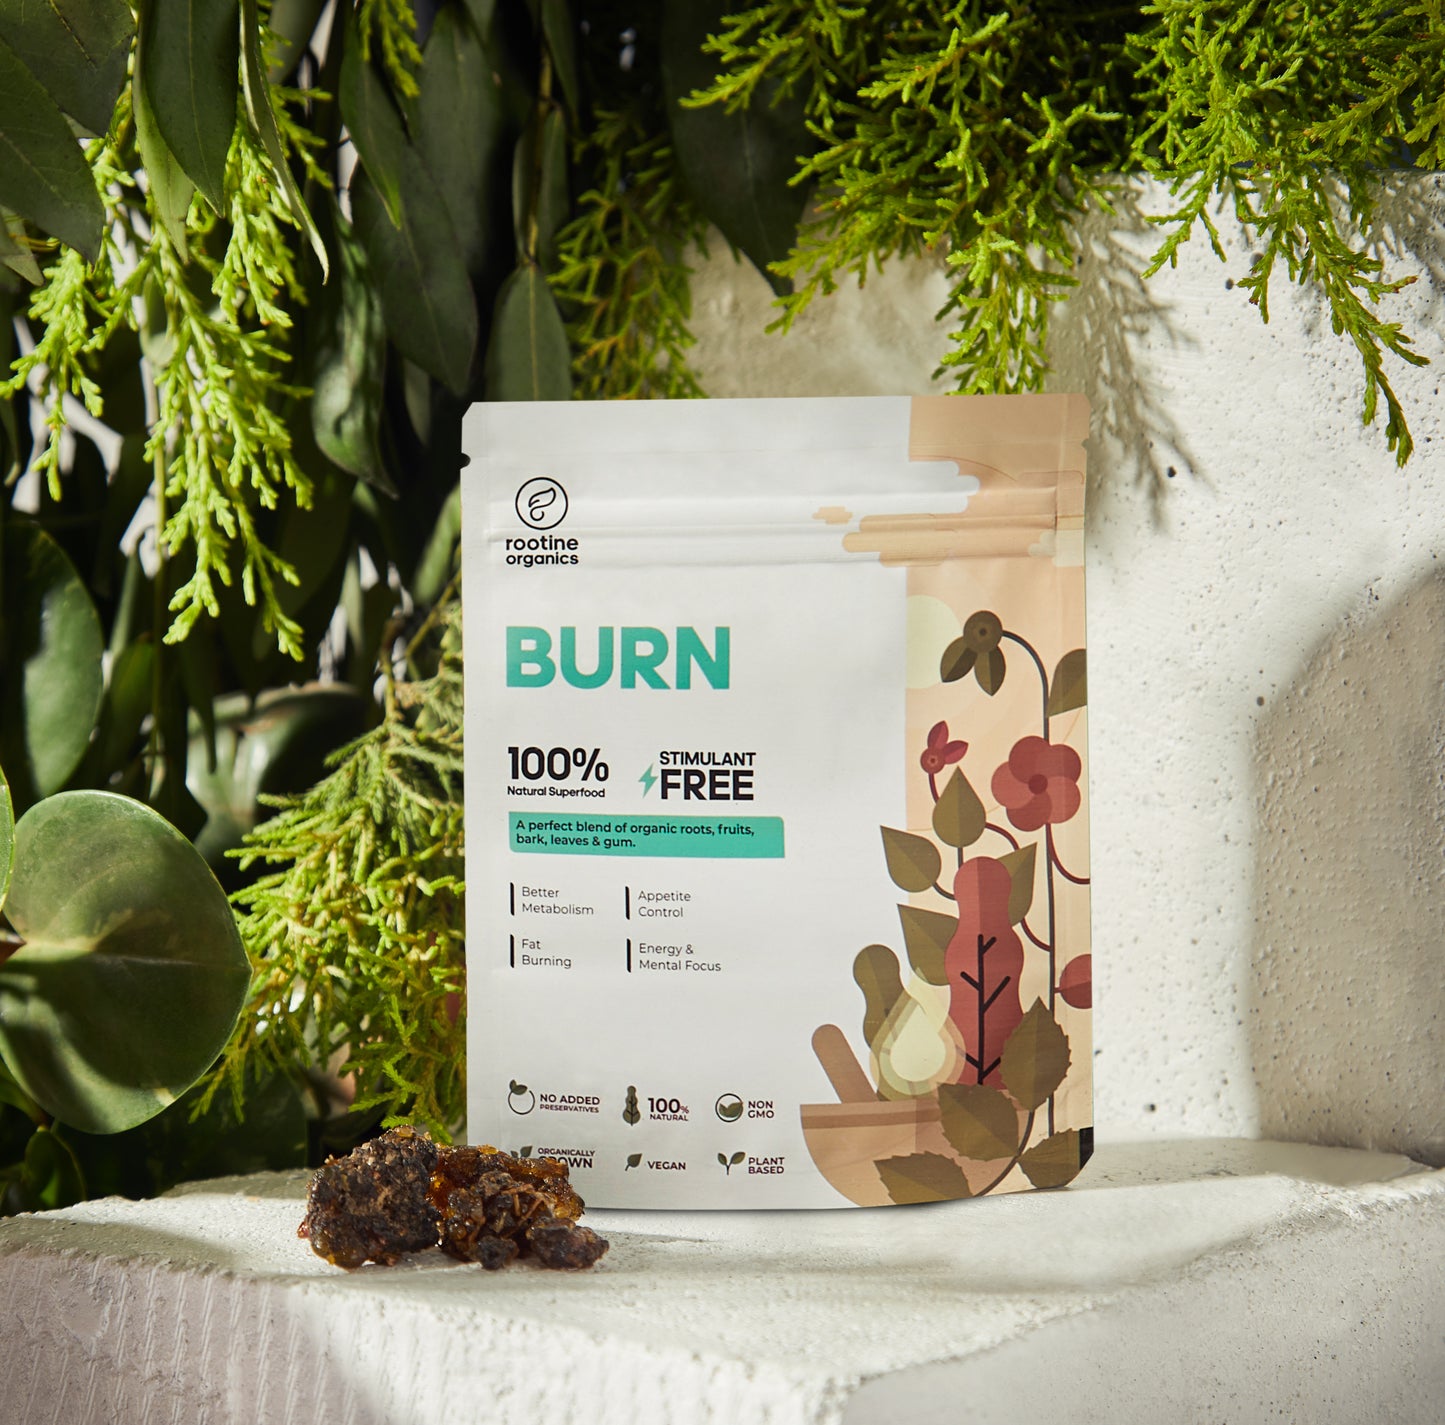 BURN – 100% Plant Based Product